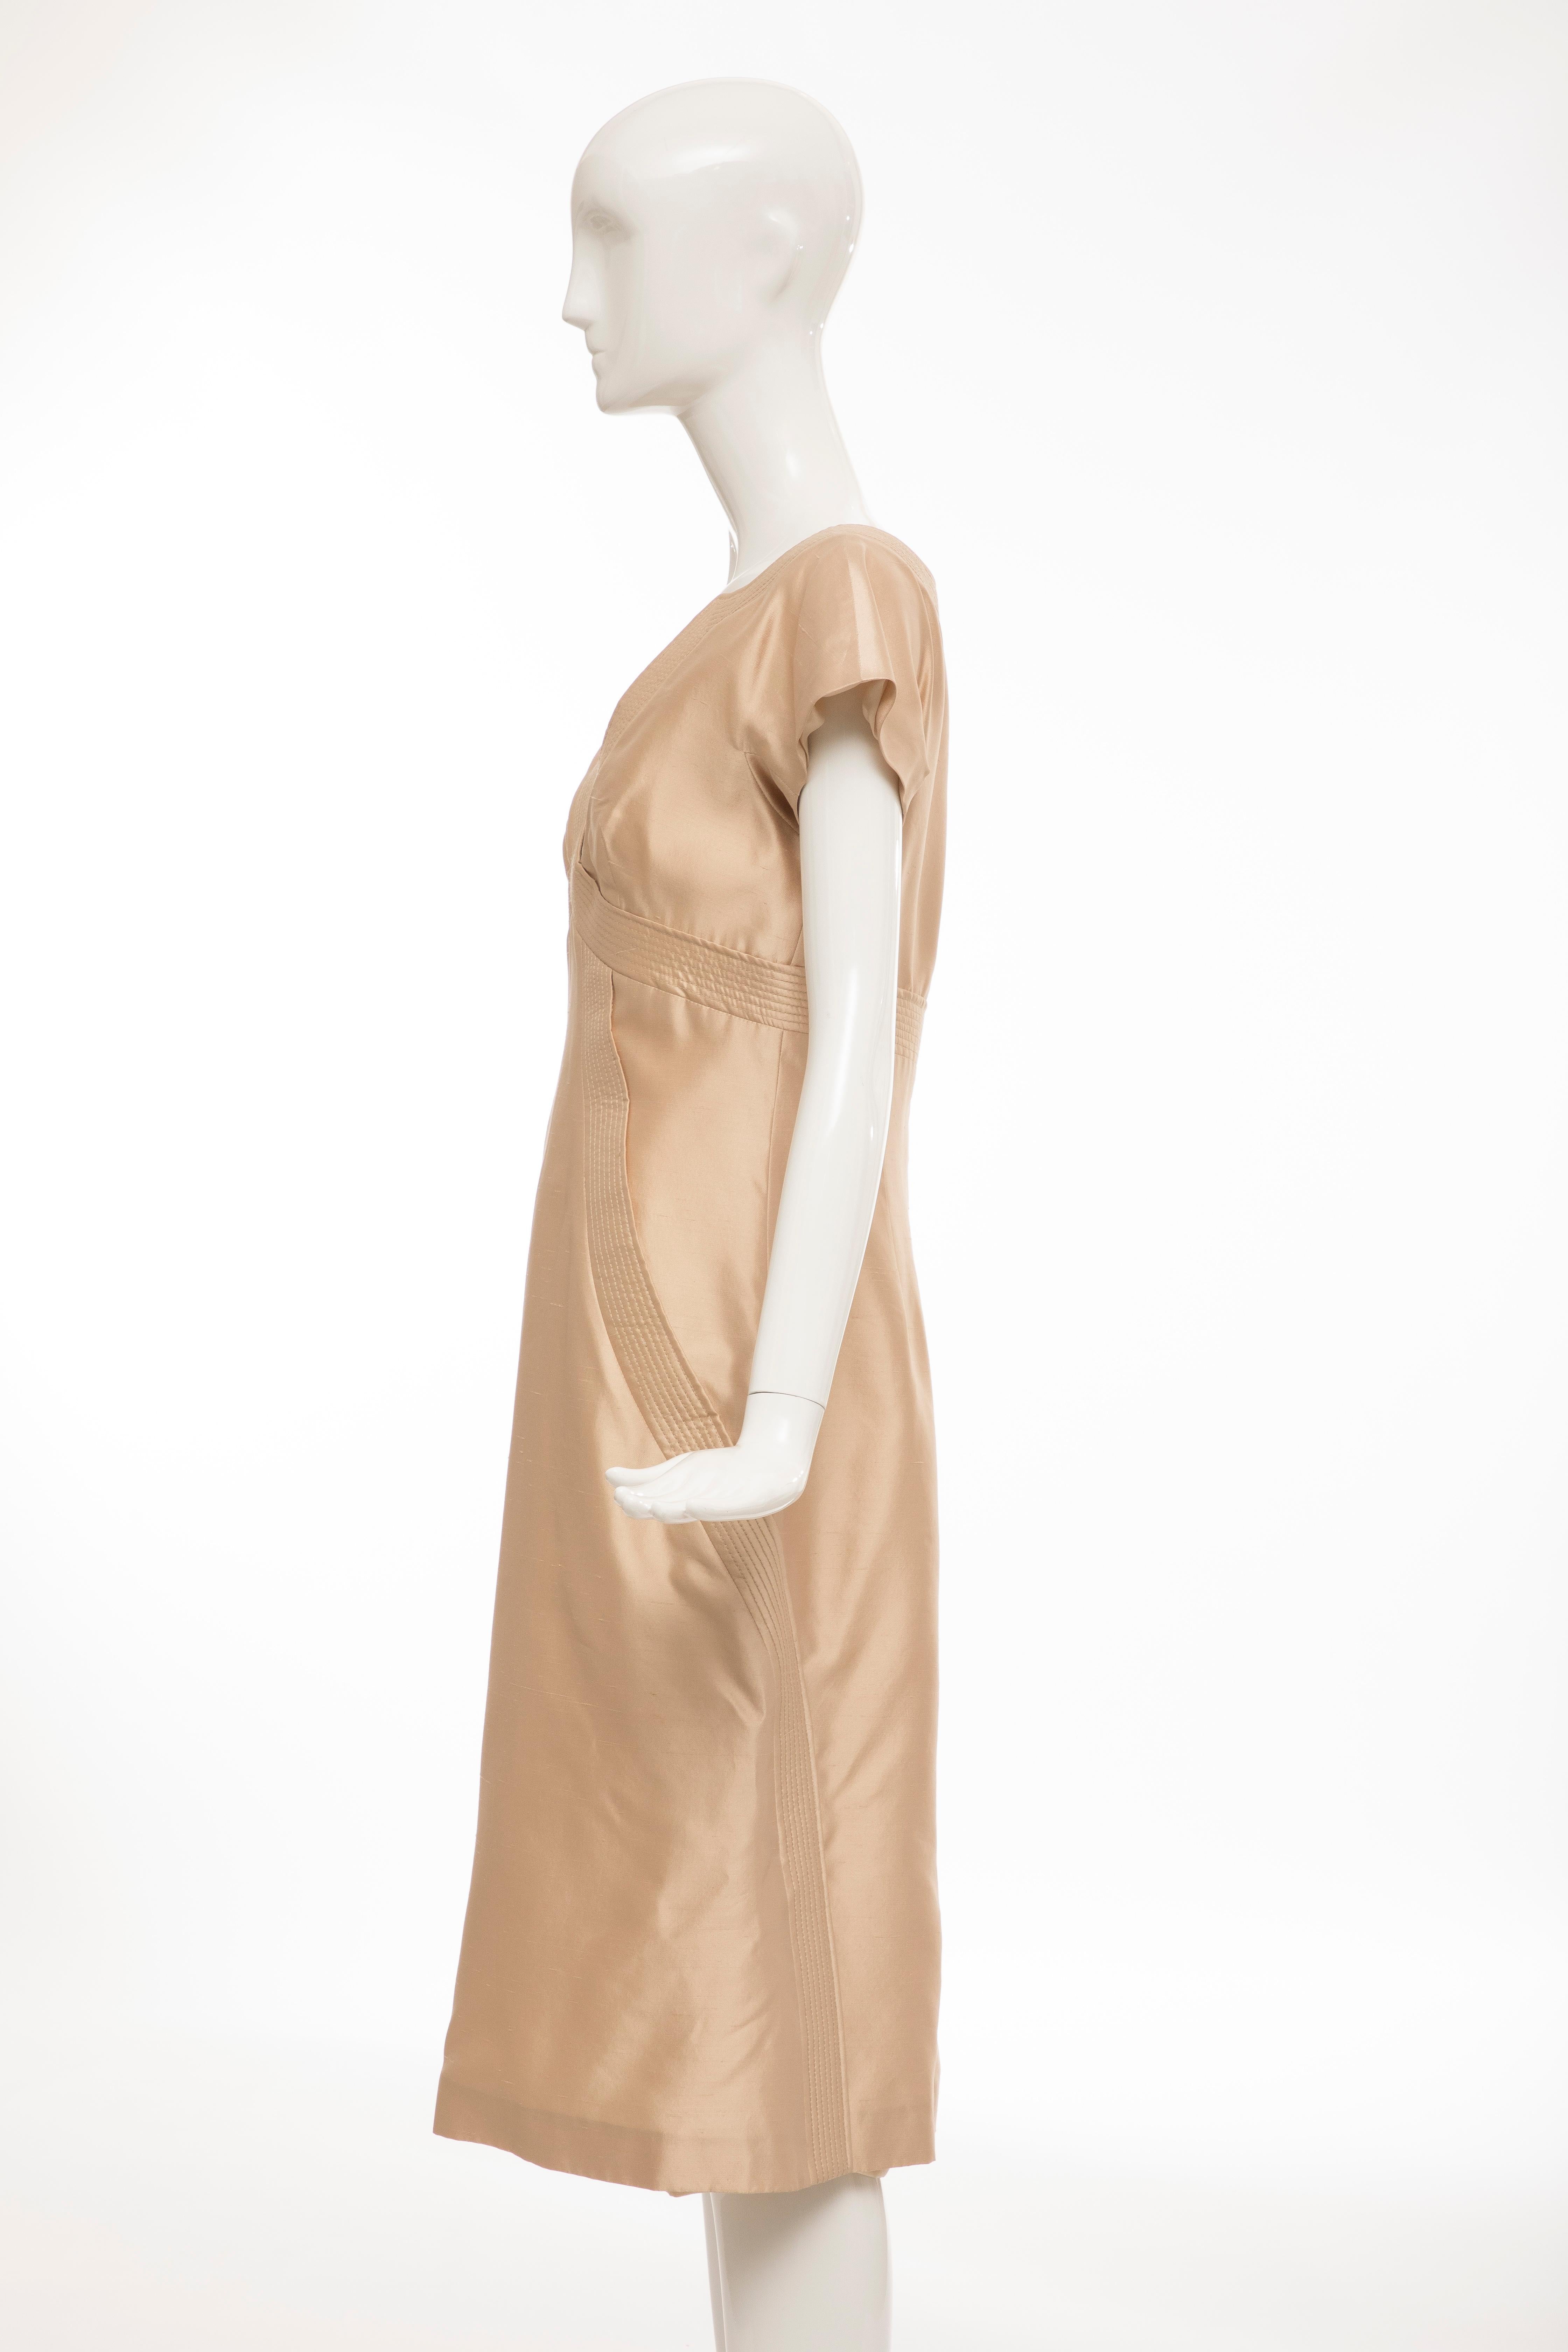 Alexander McQueen Silk Evening Dress, Spring 2006 For Sale 1